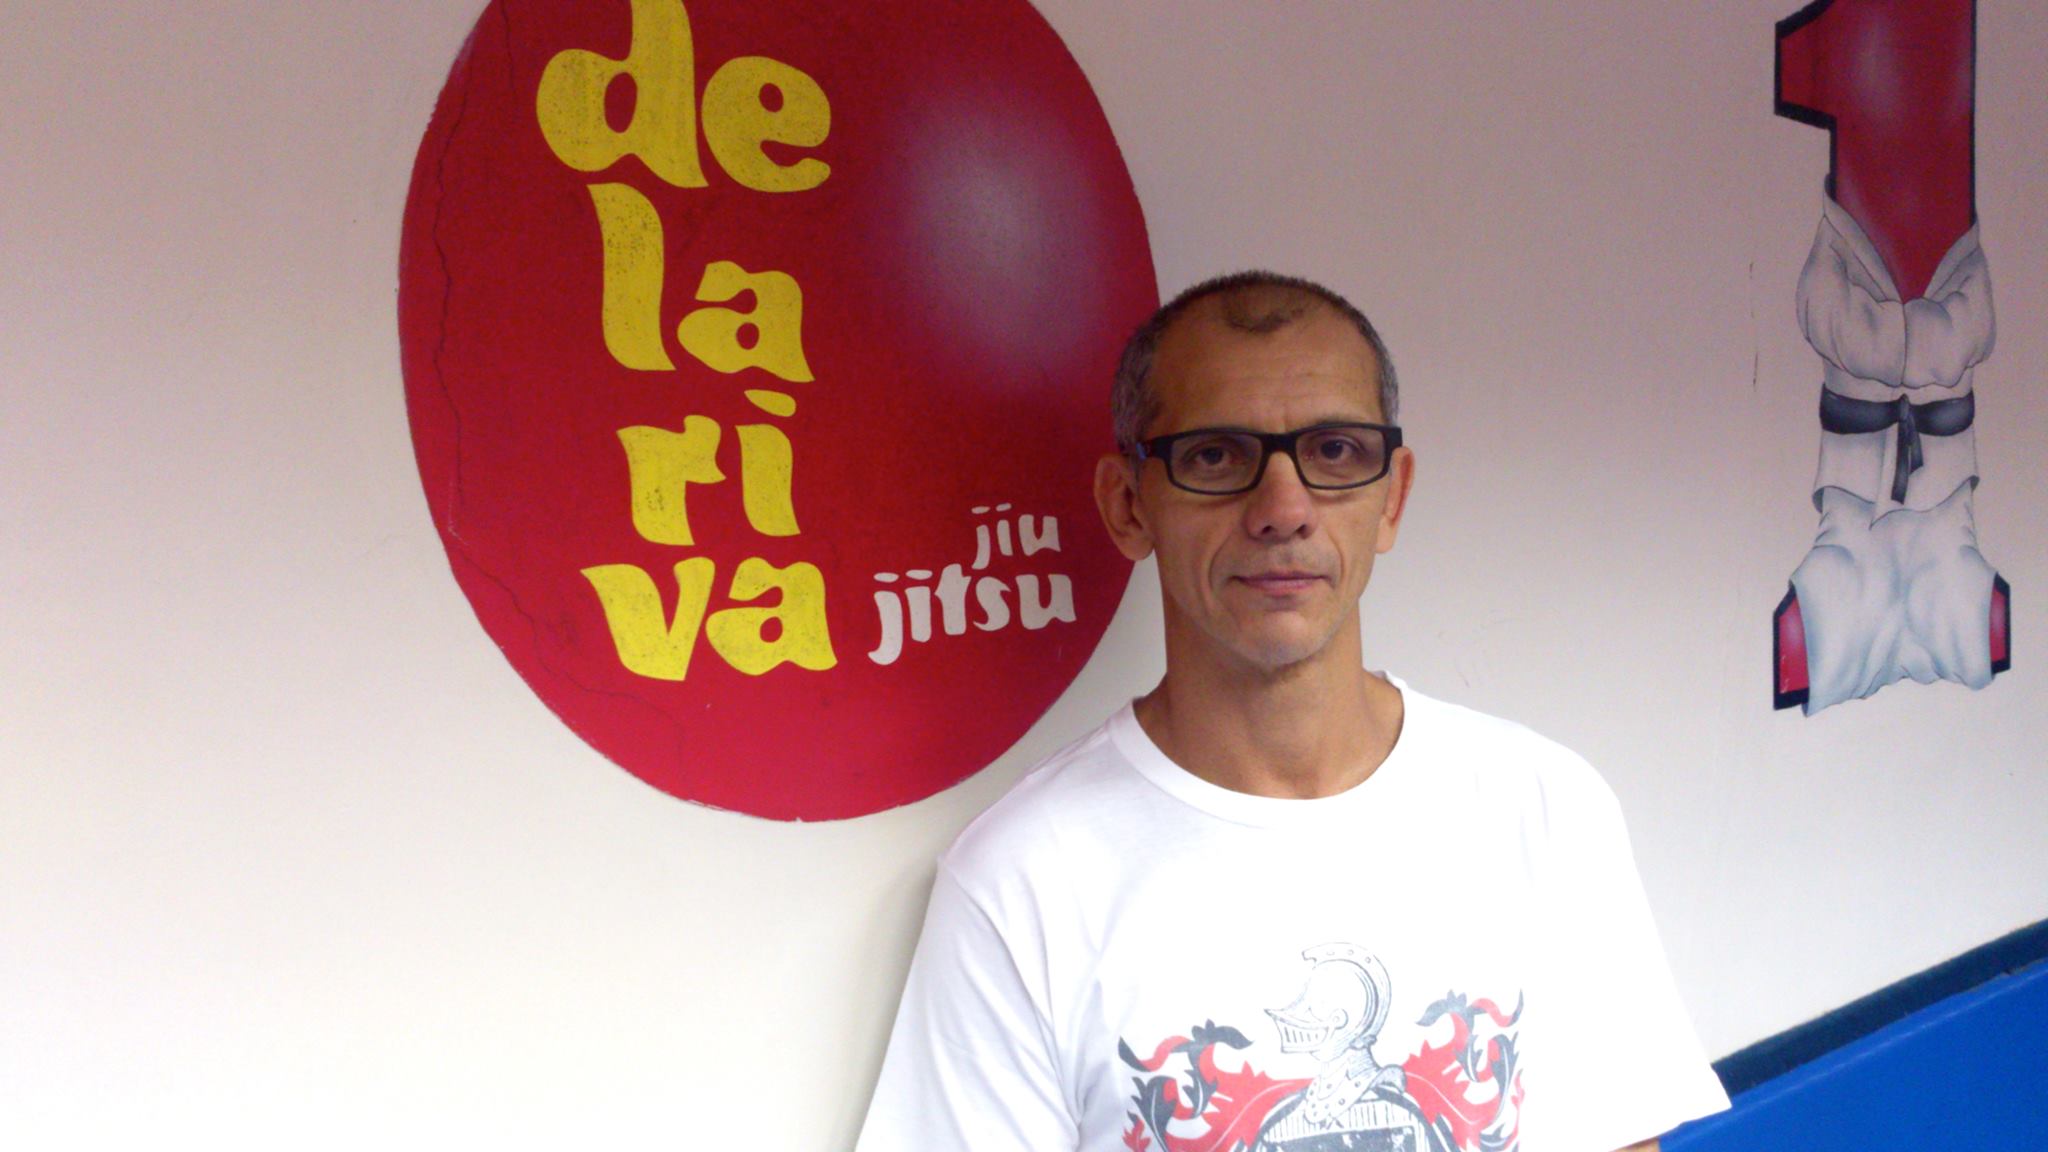 Rivalry is in the Past: Ricardo De La Riva To Give Seminar At RFT Luta Livre